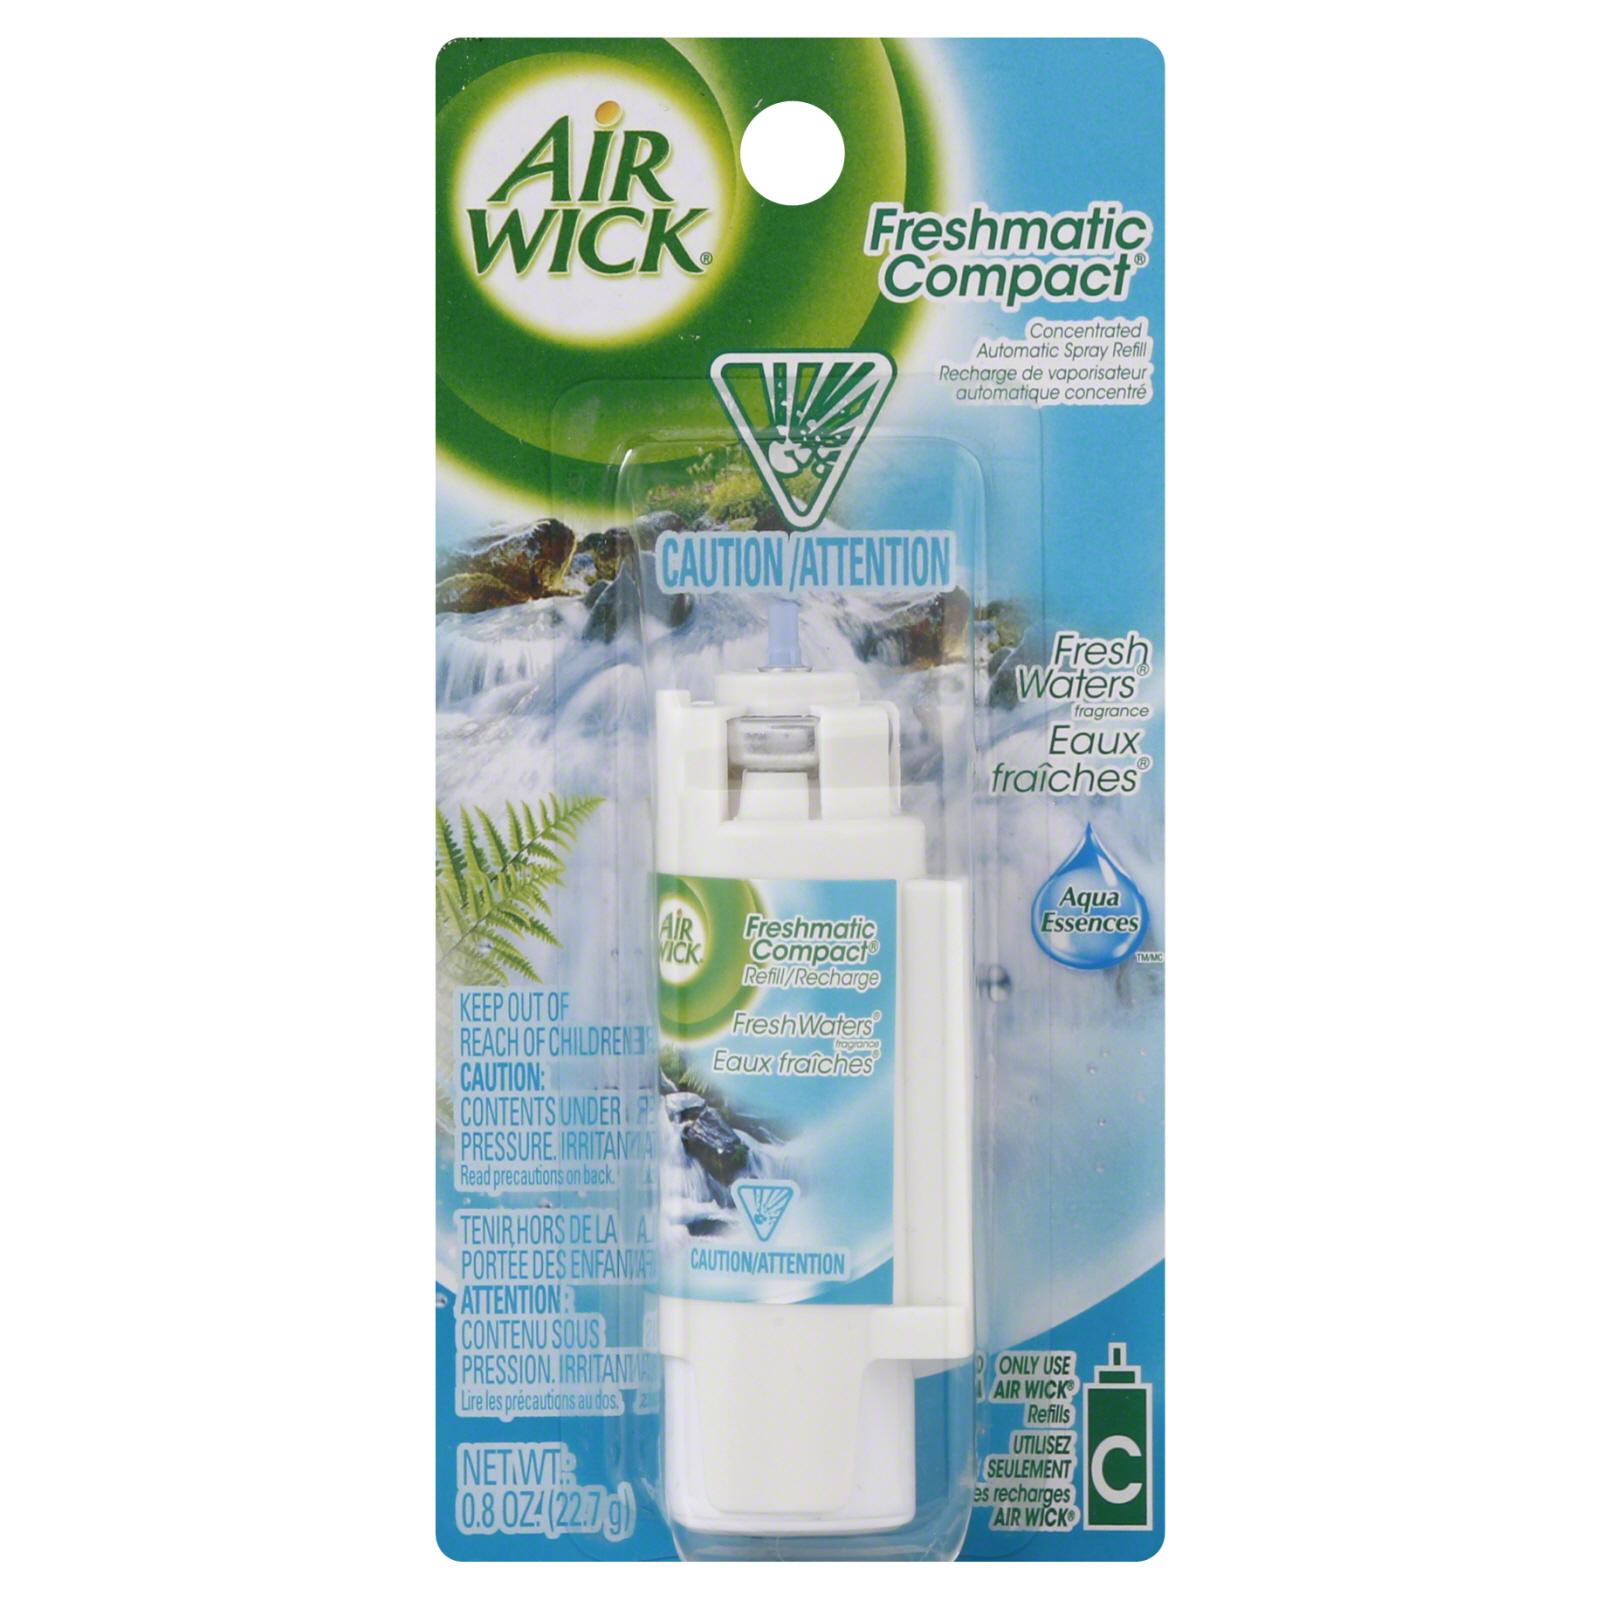 Lysol Neutra Air Freshmatic Automatic Spray Refill, Fresh Scent., 6.17 oz (175 g)   Food & Grocery   Air Fresheners   Sprays